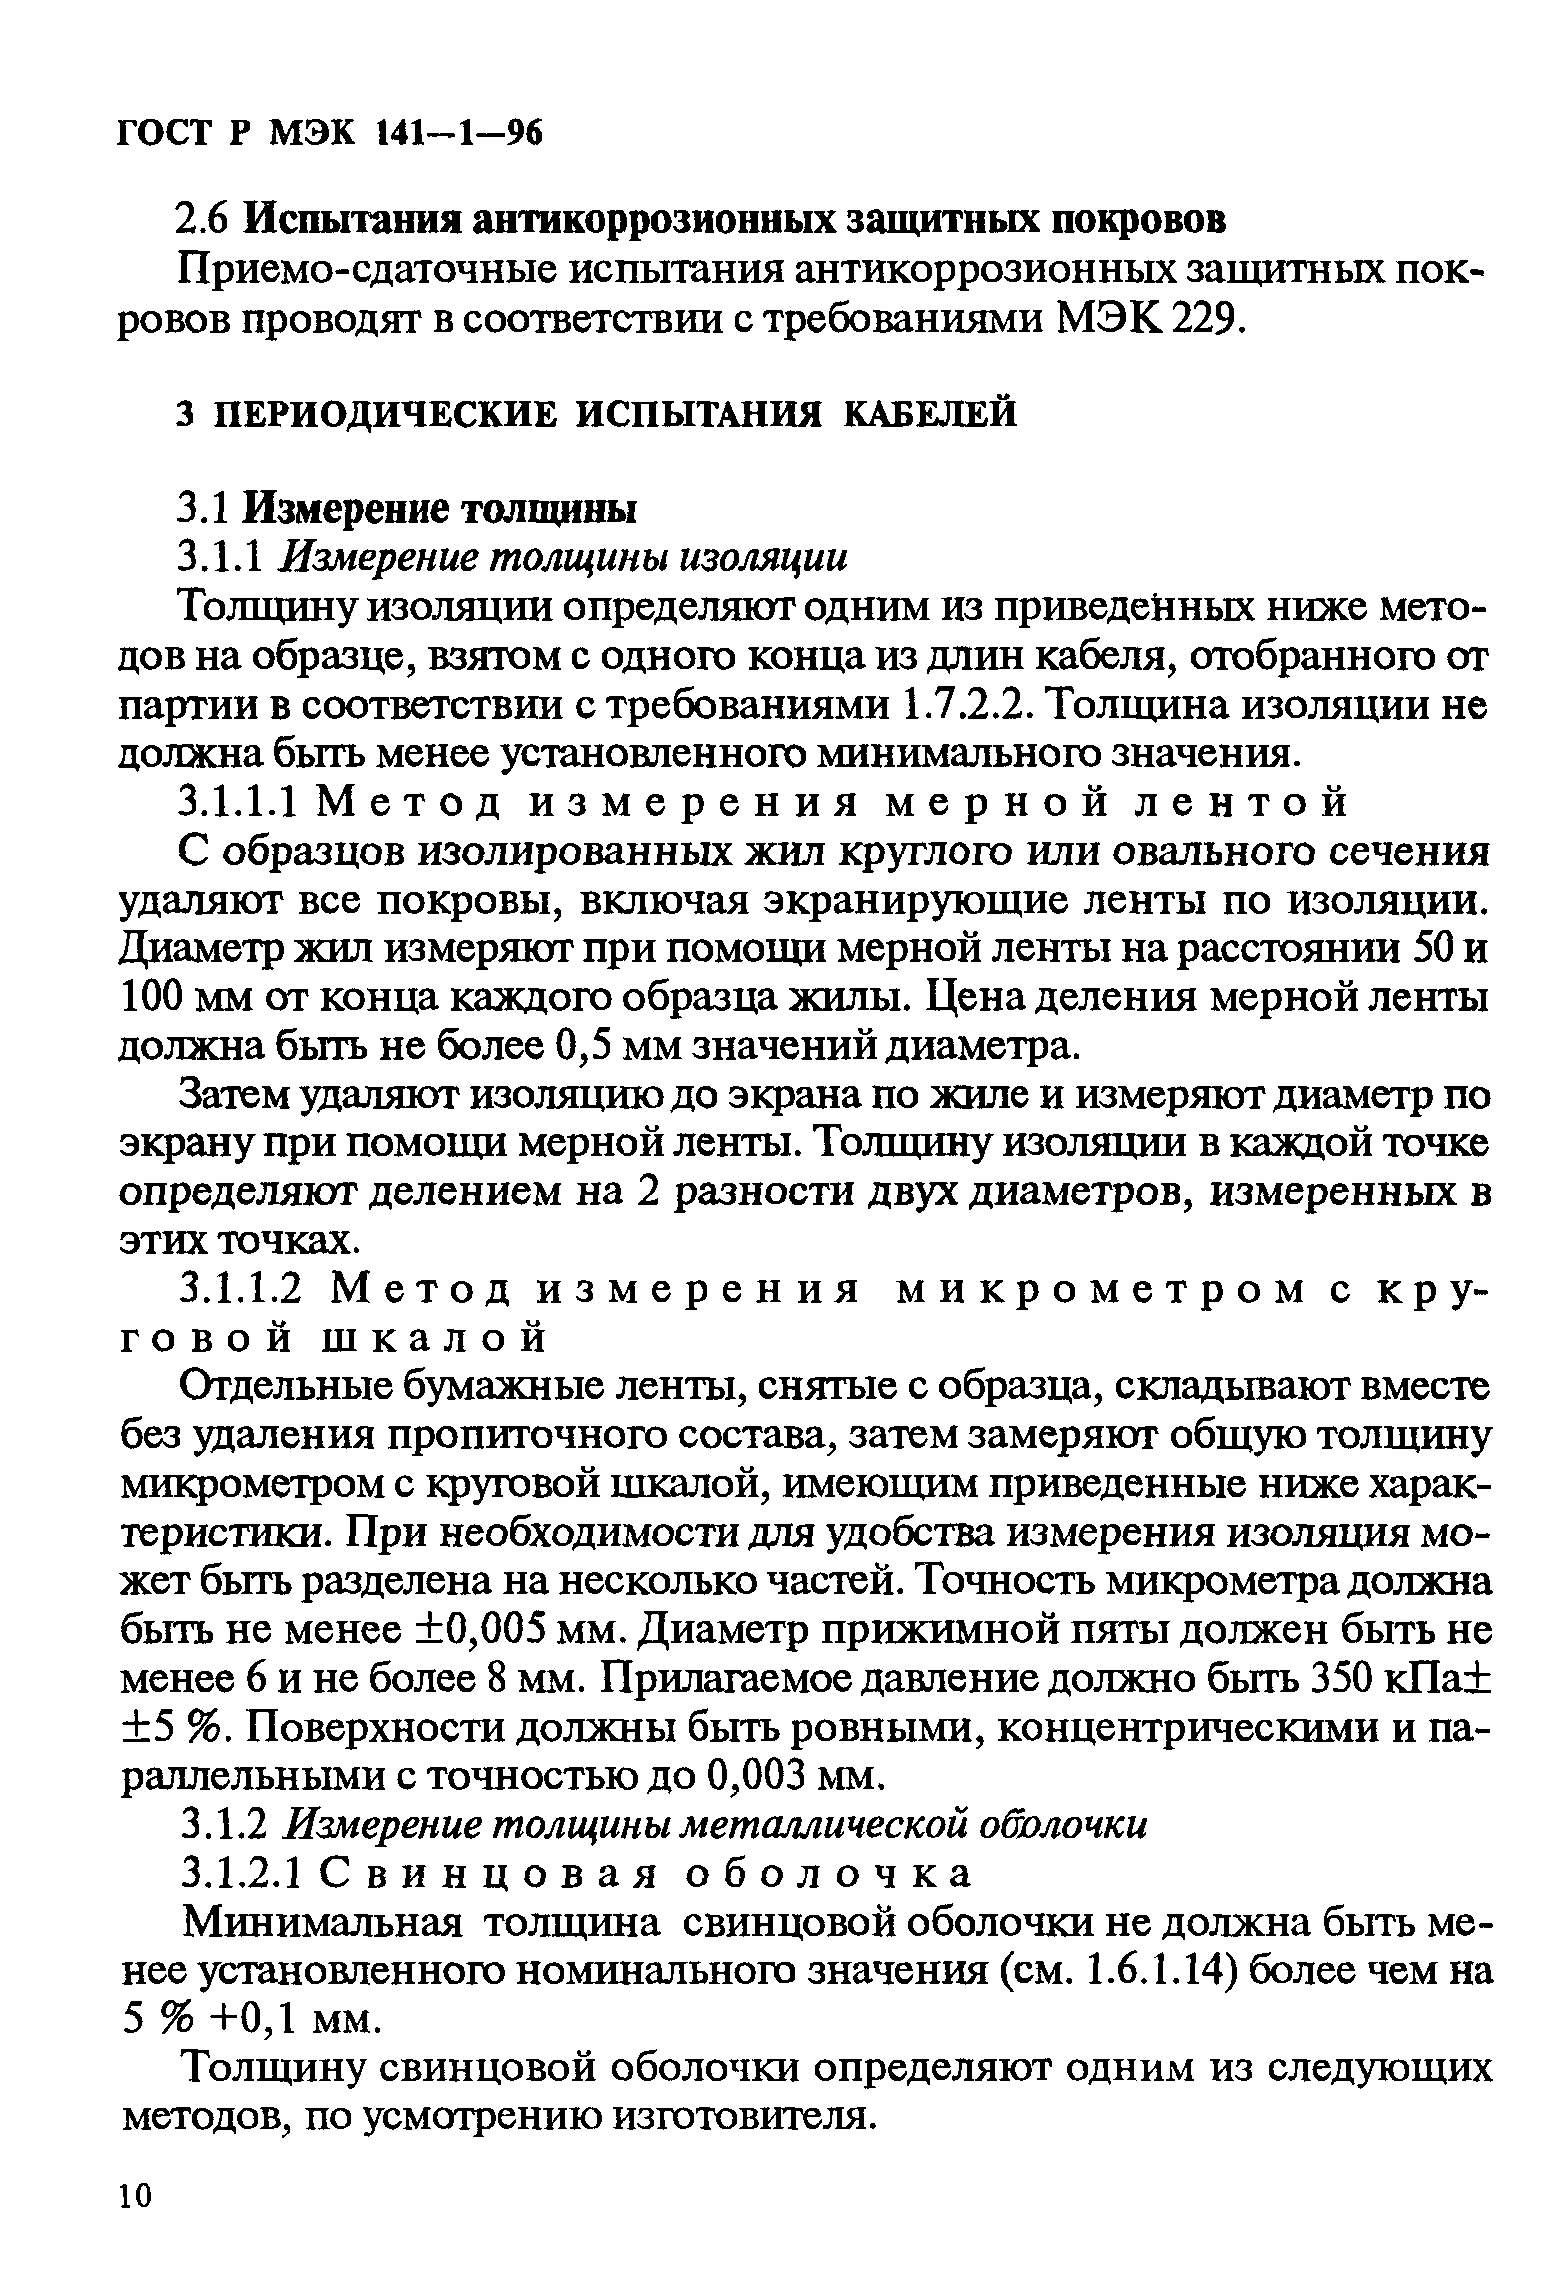 ГОСТ Р МЭК 141-1-96